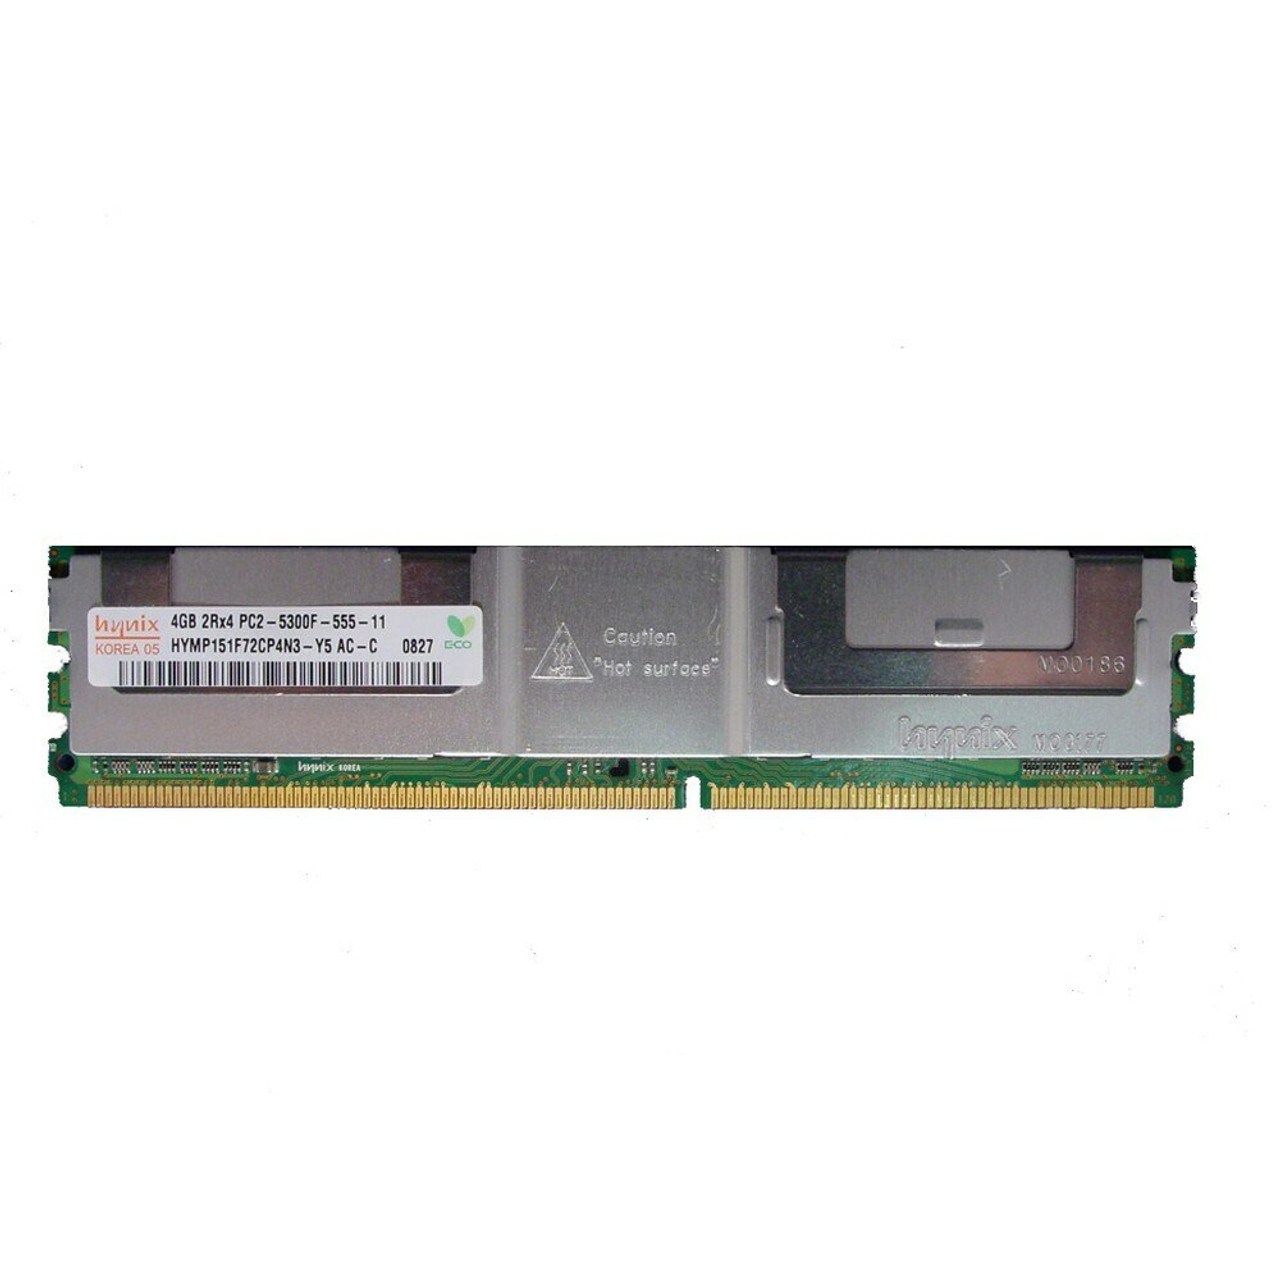 Hynix HYMP151F72CP4N3-Y5 4GB 2Rx4 PC2-5300F Memory 